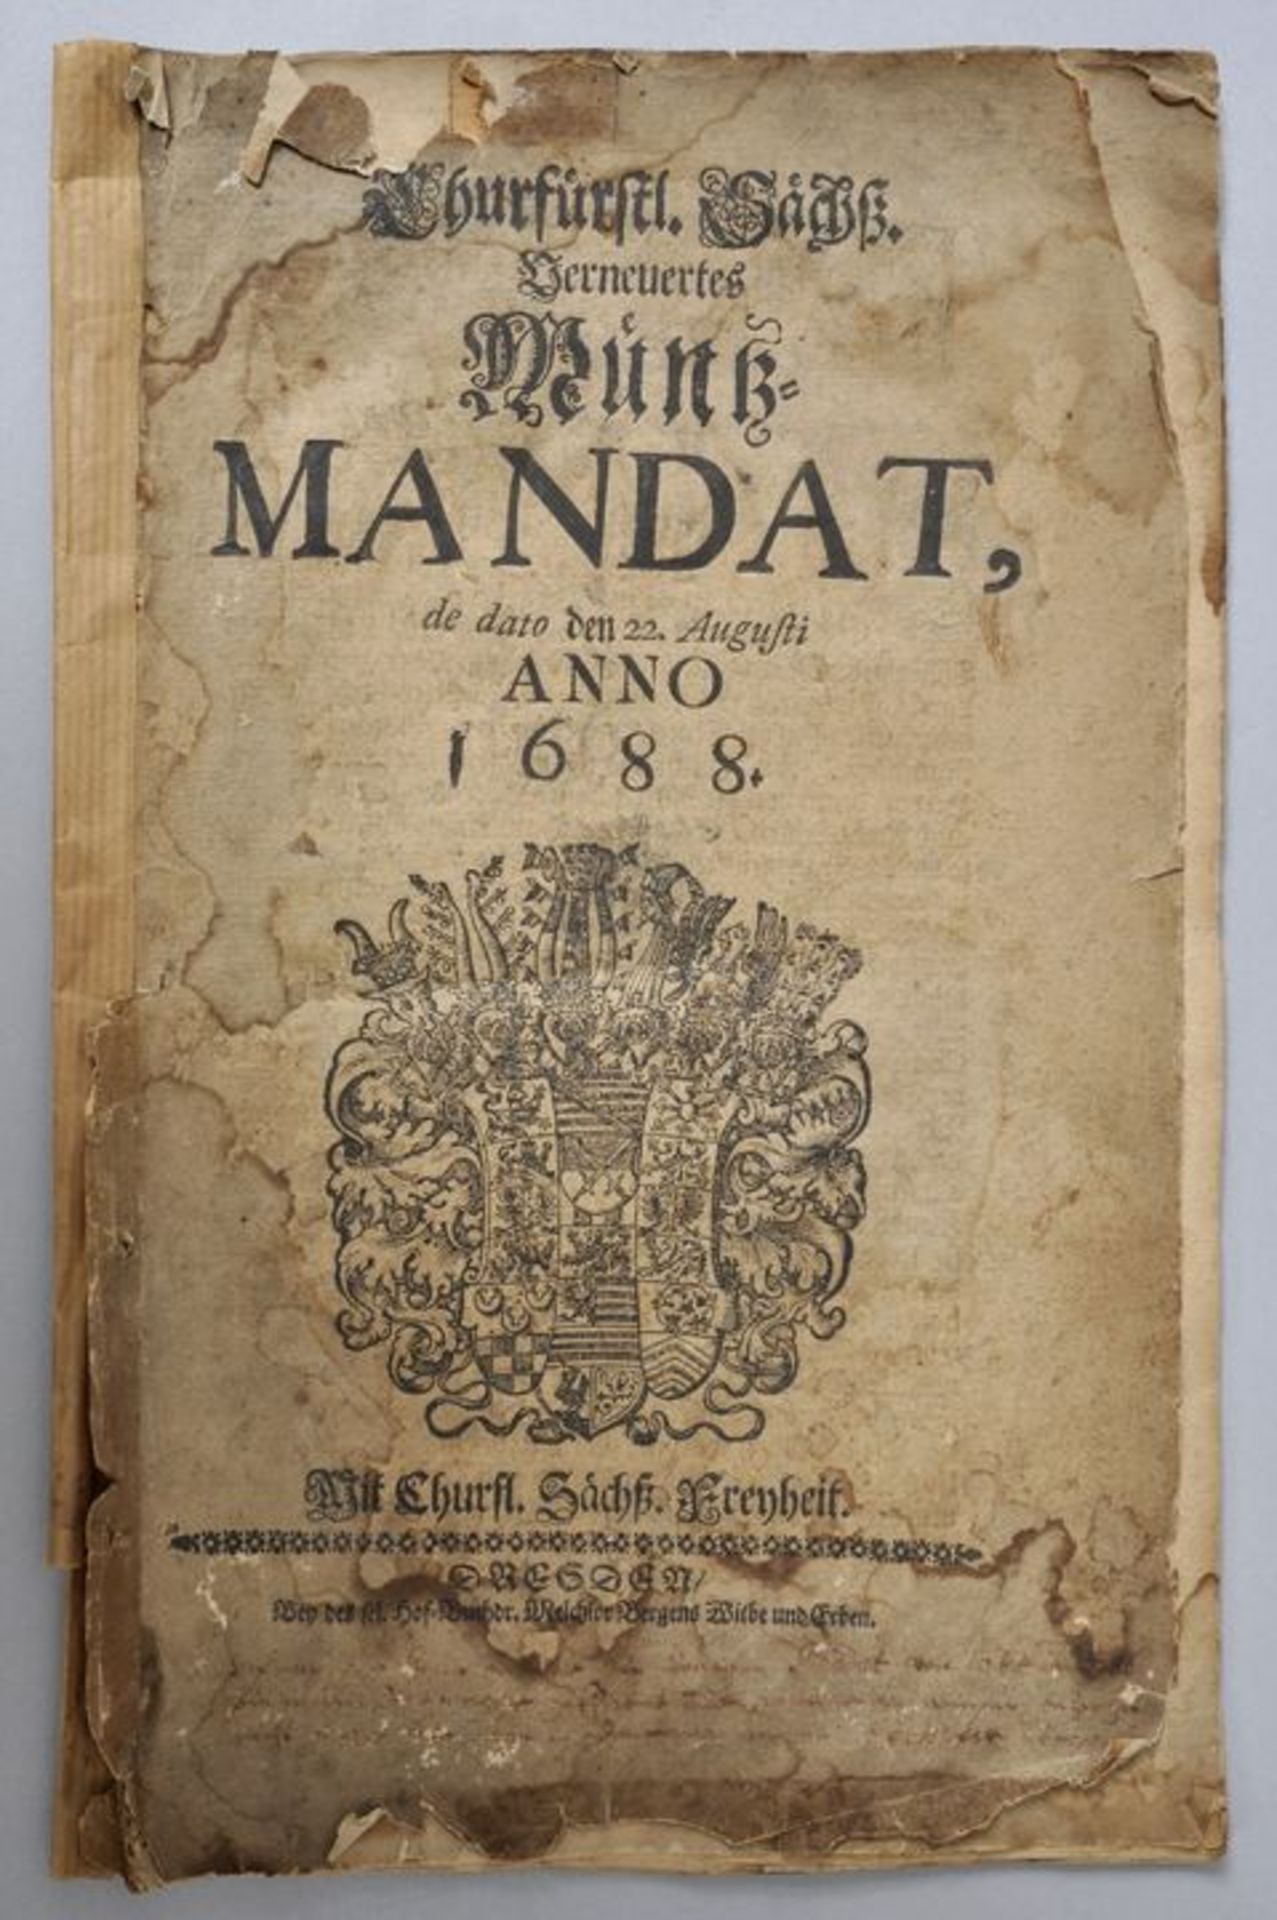 Churfürstlichl. Sächs. Verneuertes Münz=Mandat, 1688Verordnung über im Kurfürstentum Sachsen gültige